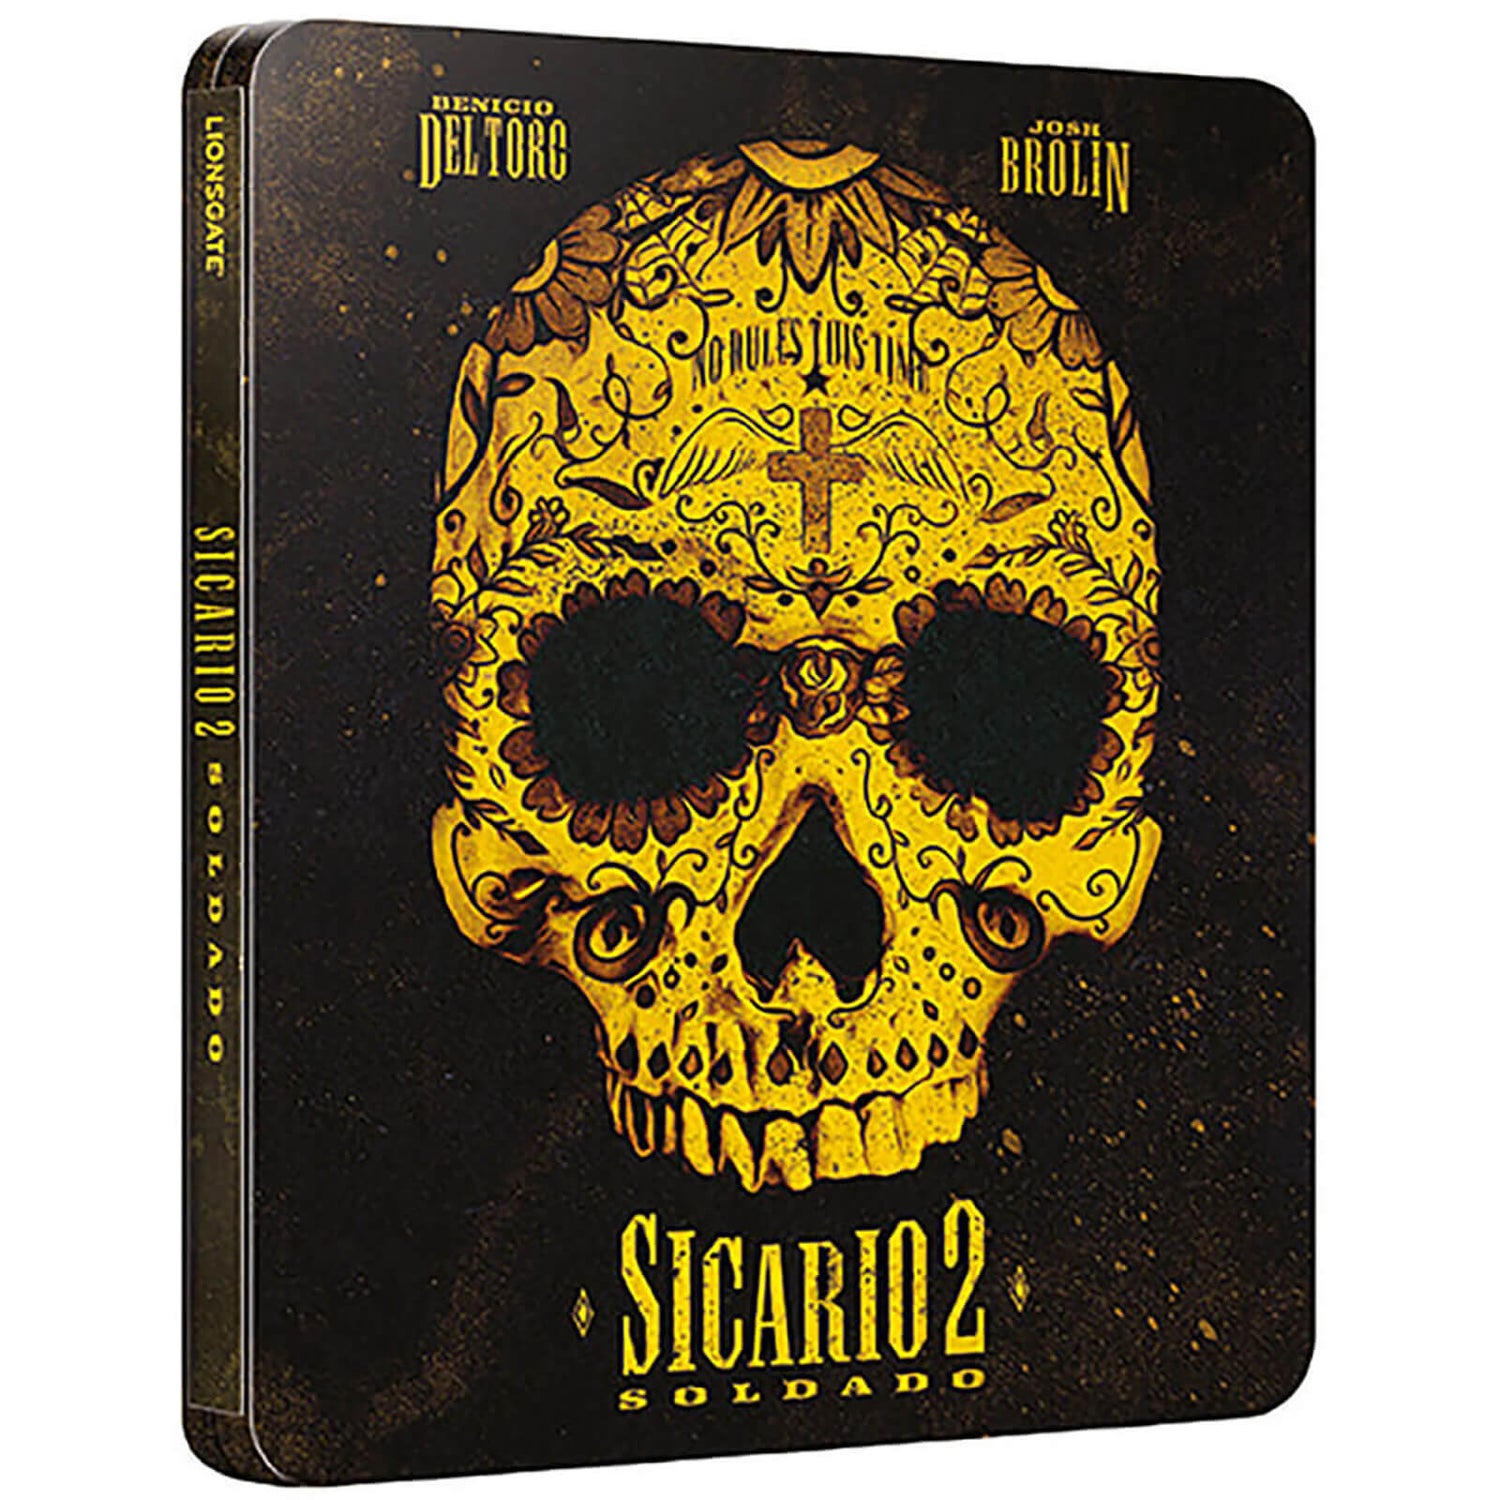 Sicario 2: Soldado 4K Ultra HD (Includes 2D Version) - Limited Edition Steelbook